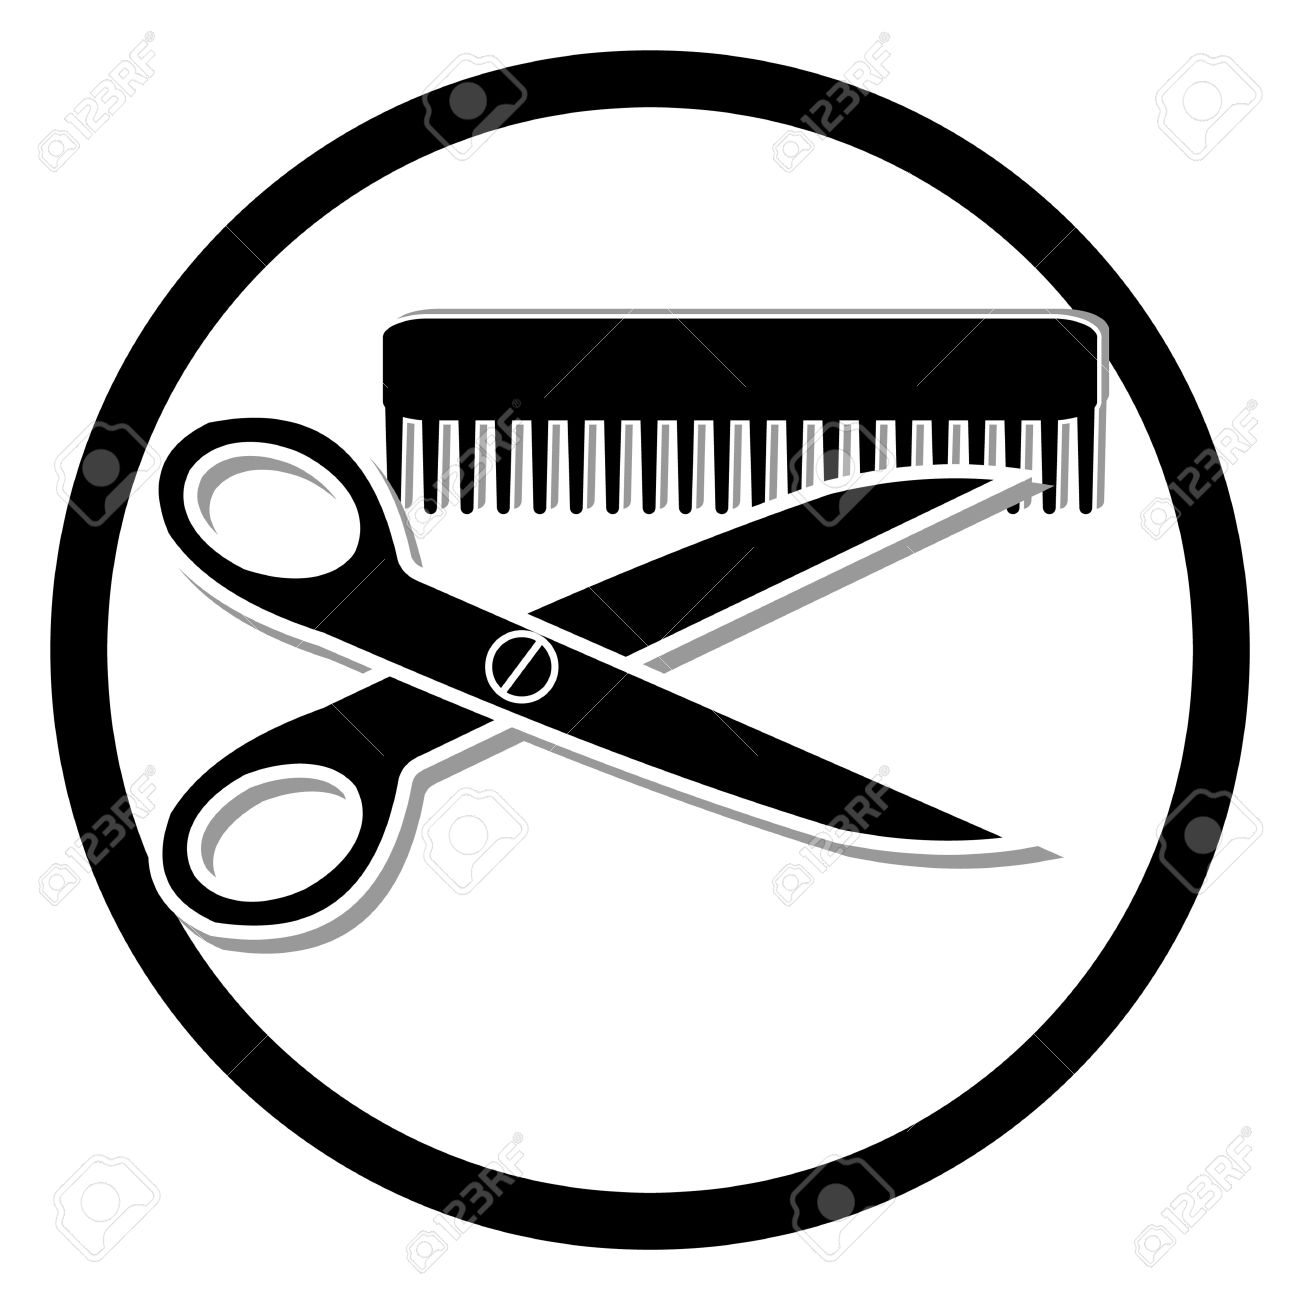 Haircut clipart haircutting. Hair cut free download